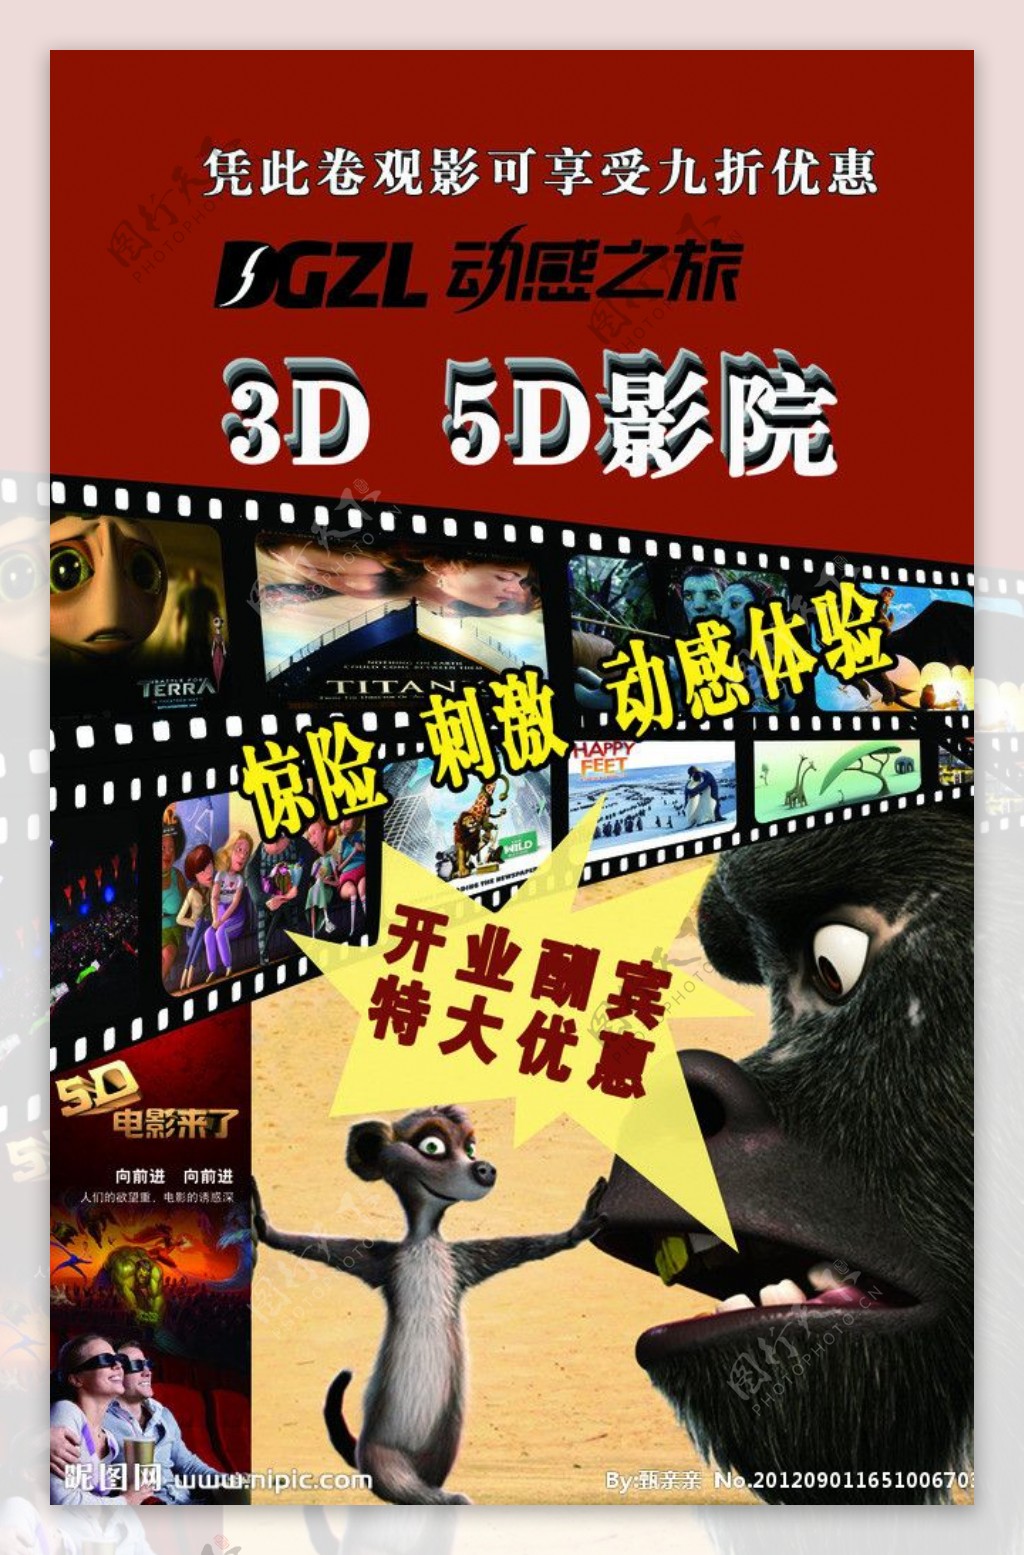 3D5D影院单页图片